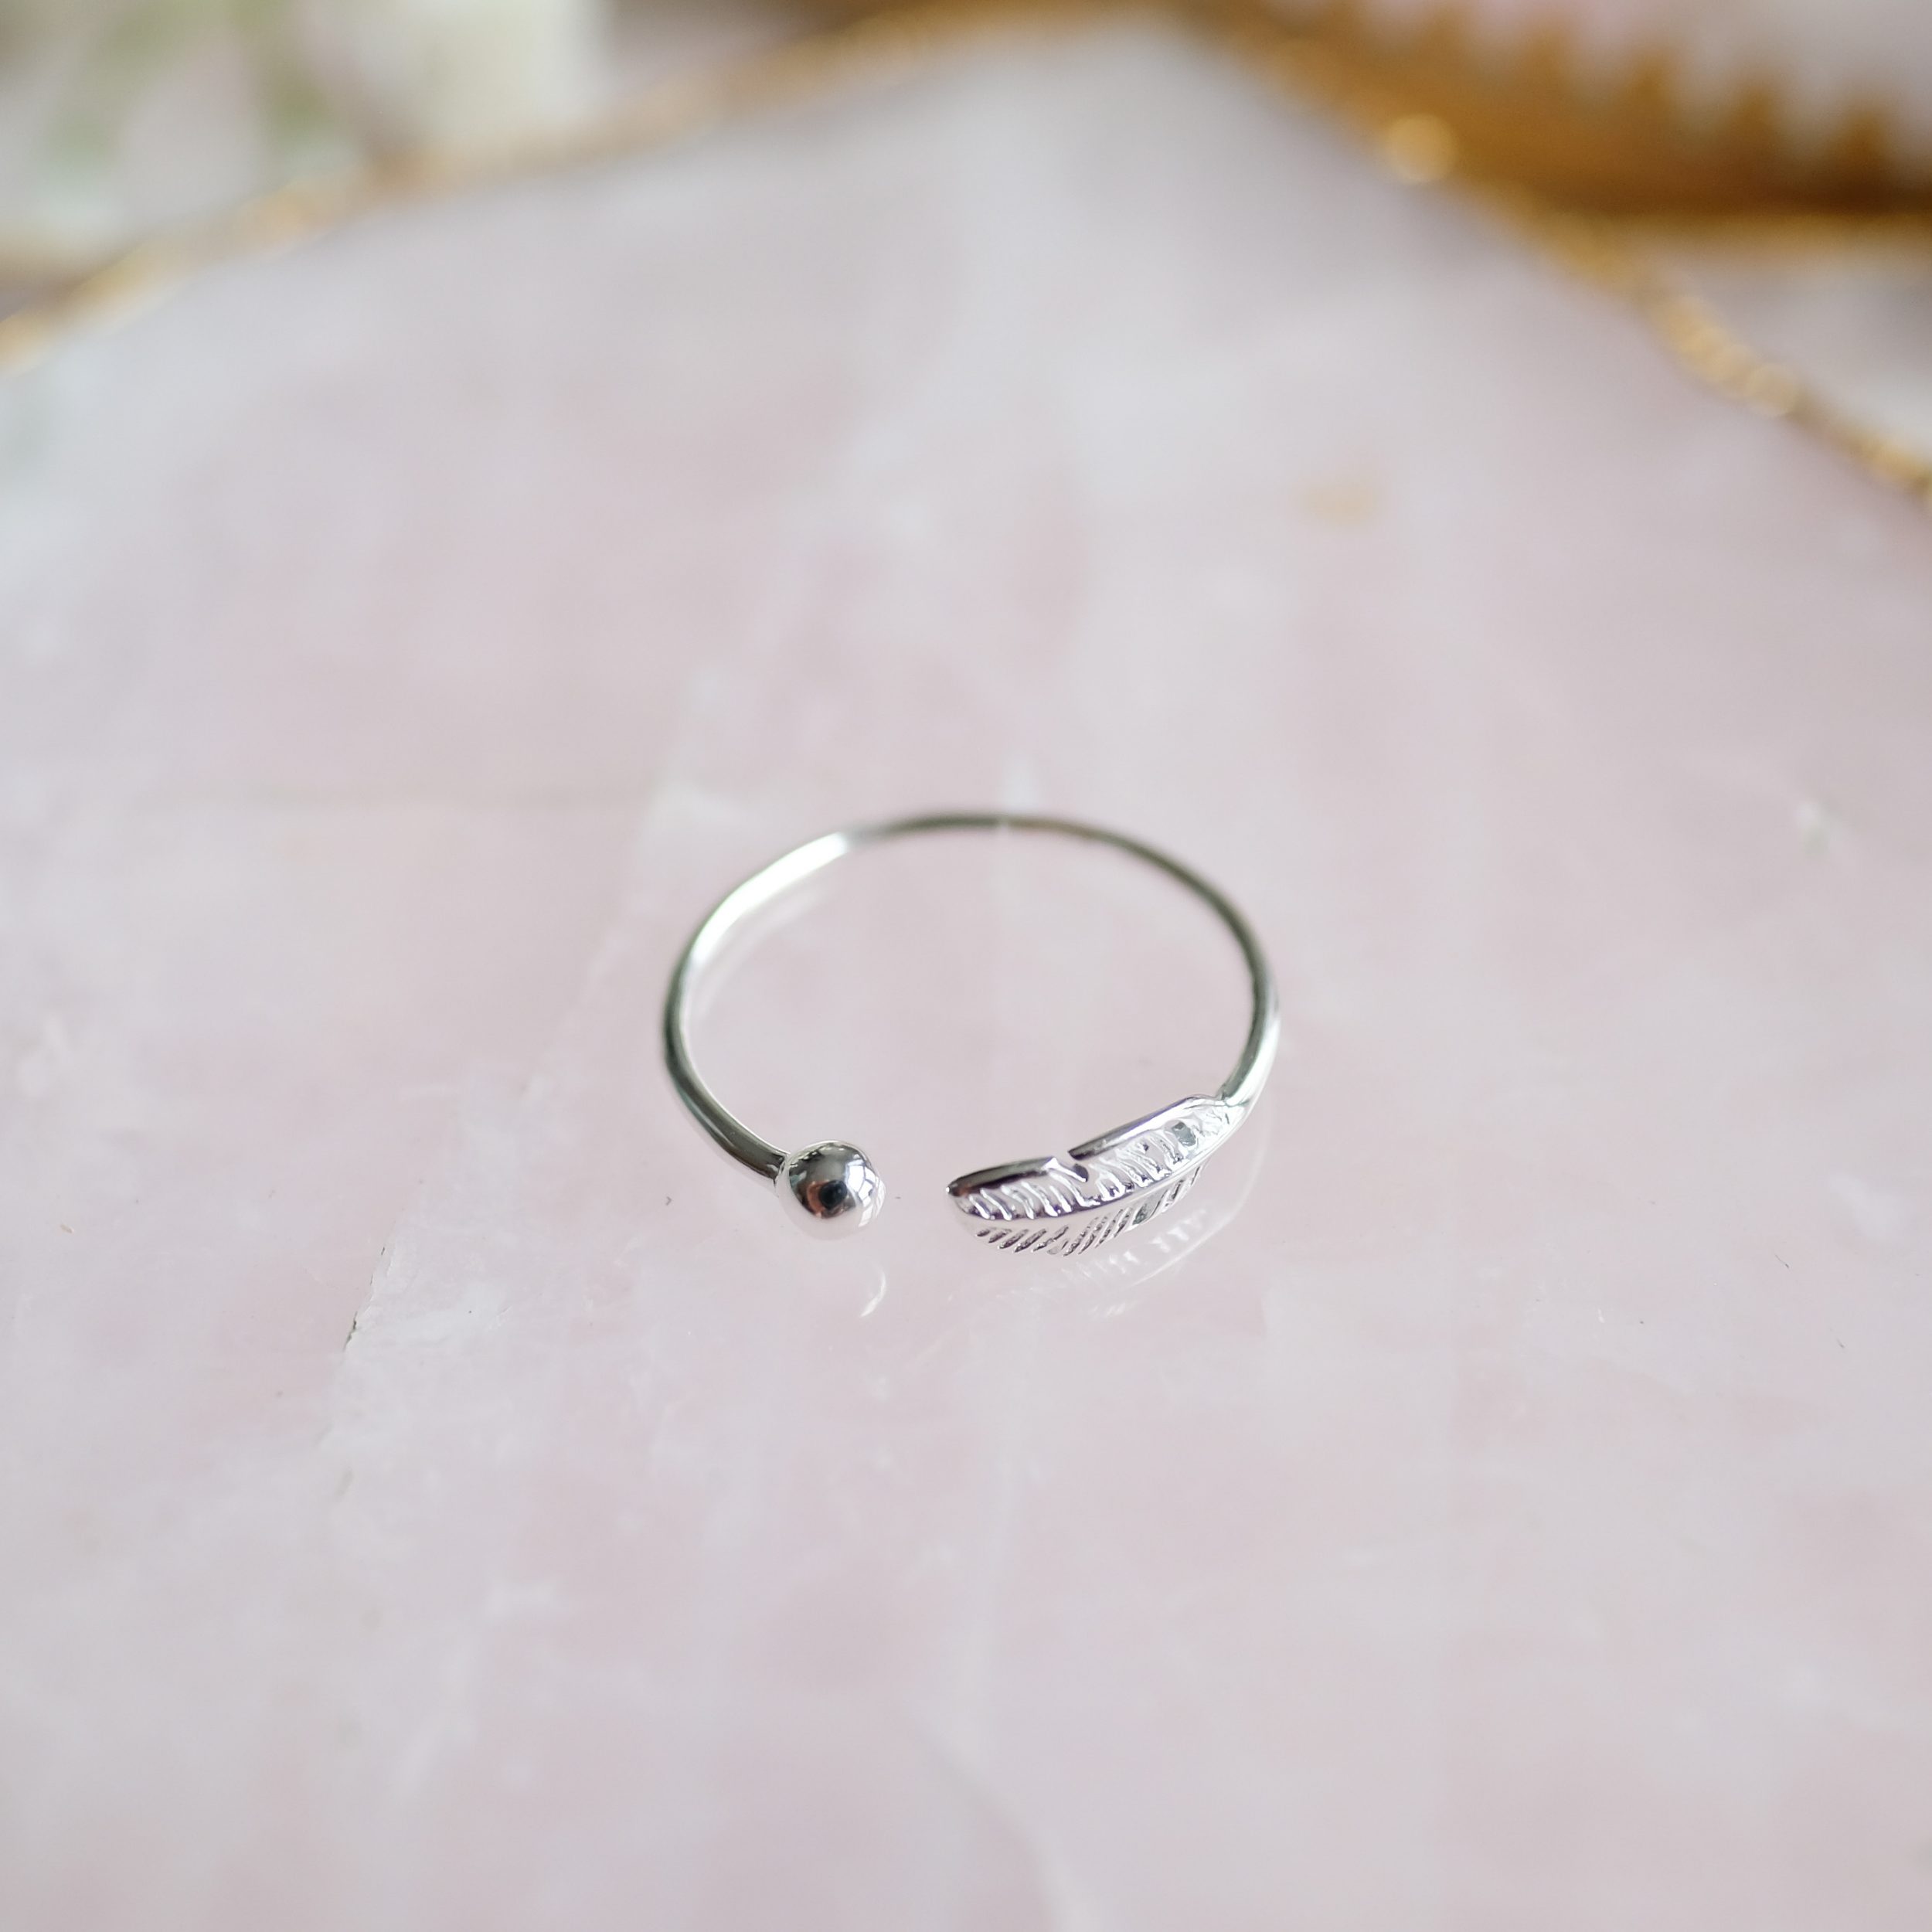 Veren zilveren ring ontworpen met gevoel voor design en kwaliteit